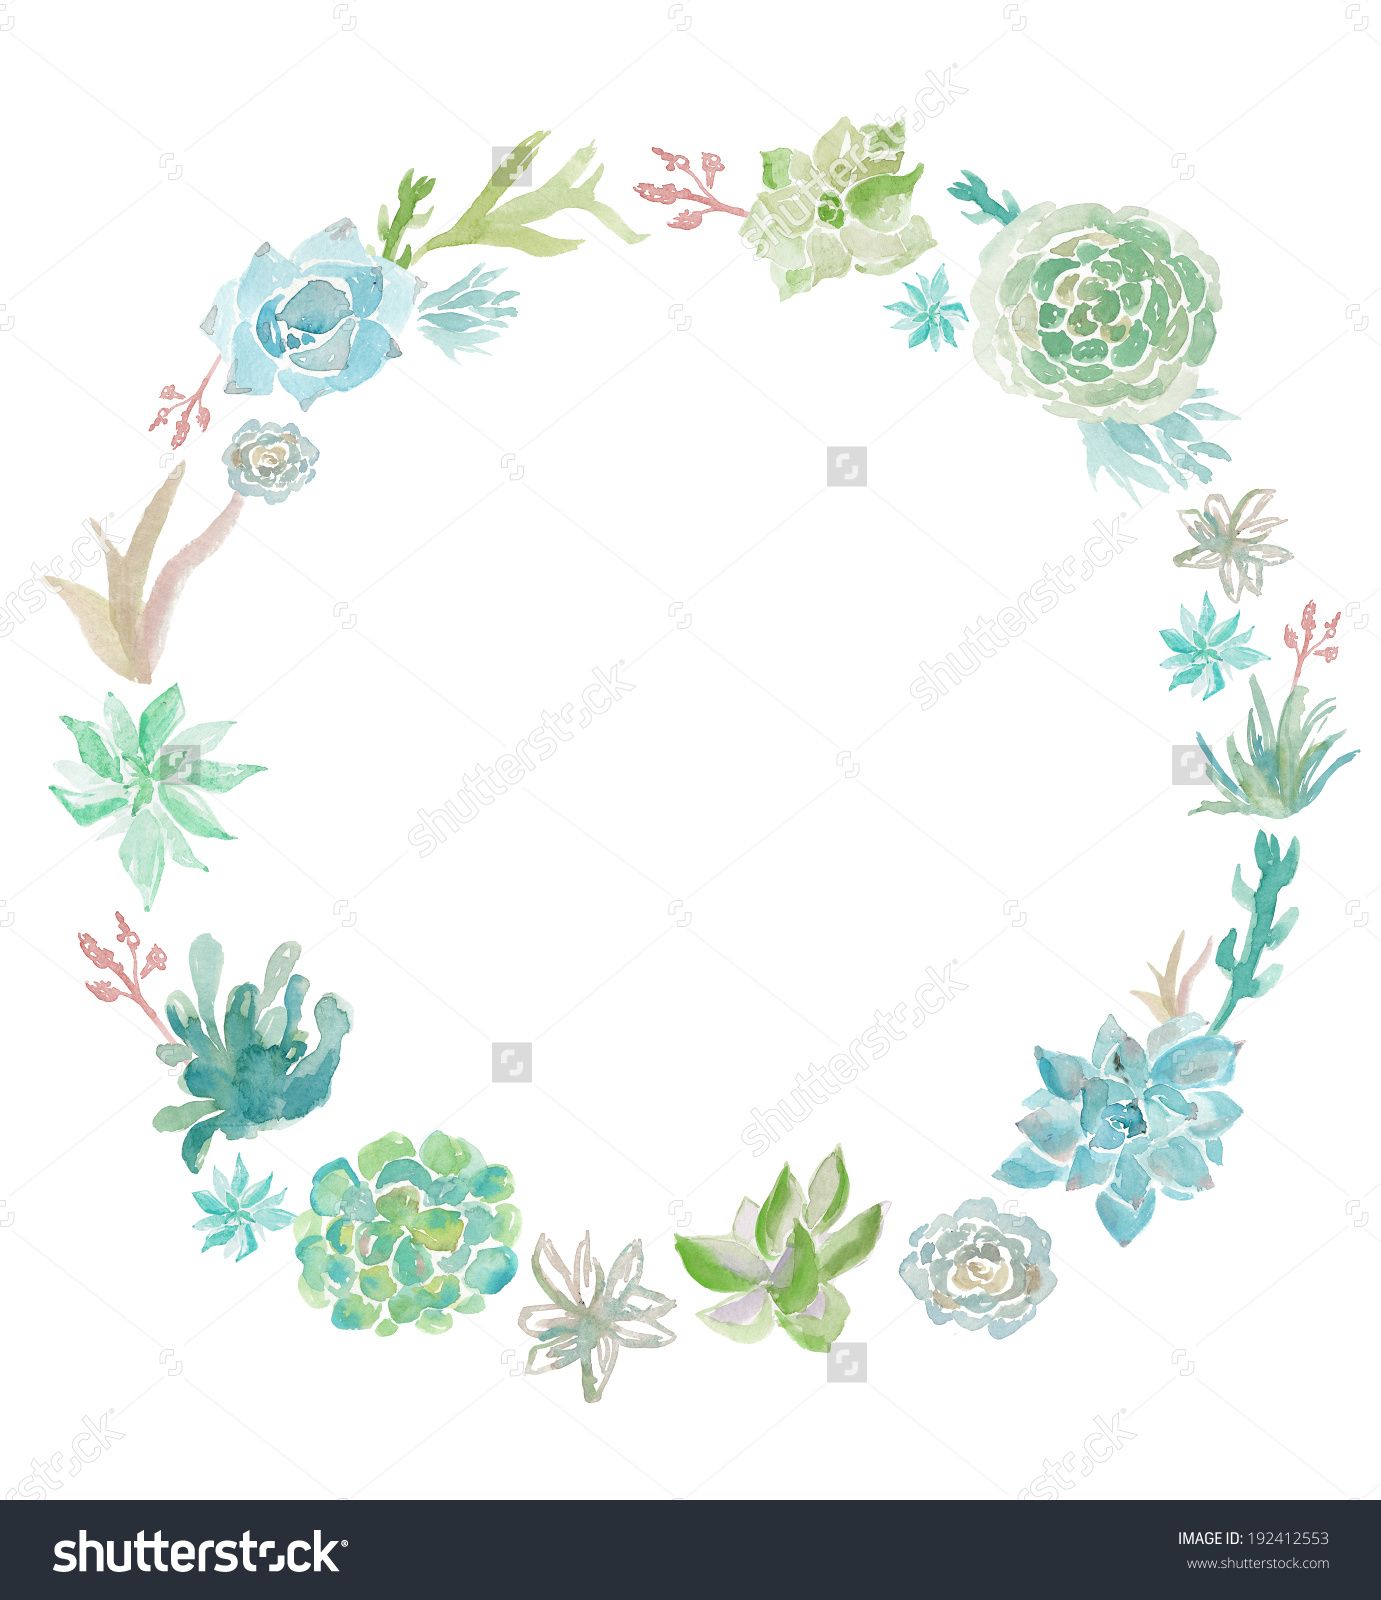 succulent clipart blue wreath